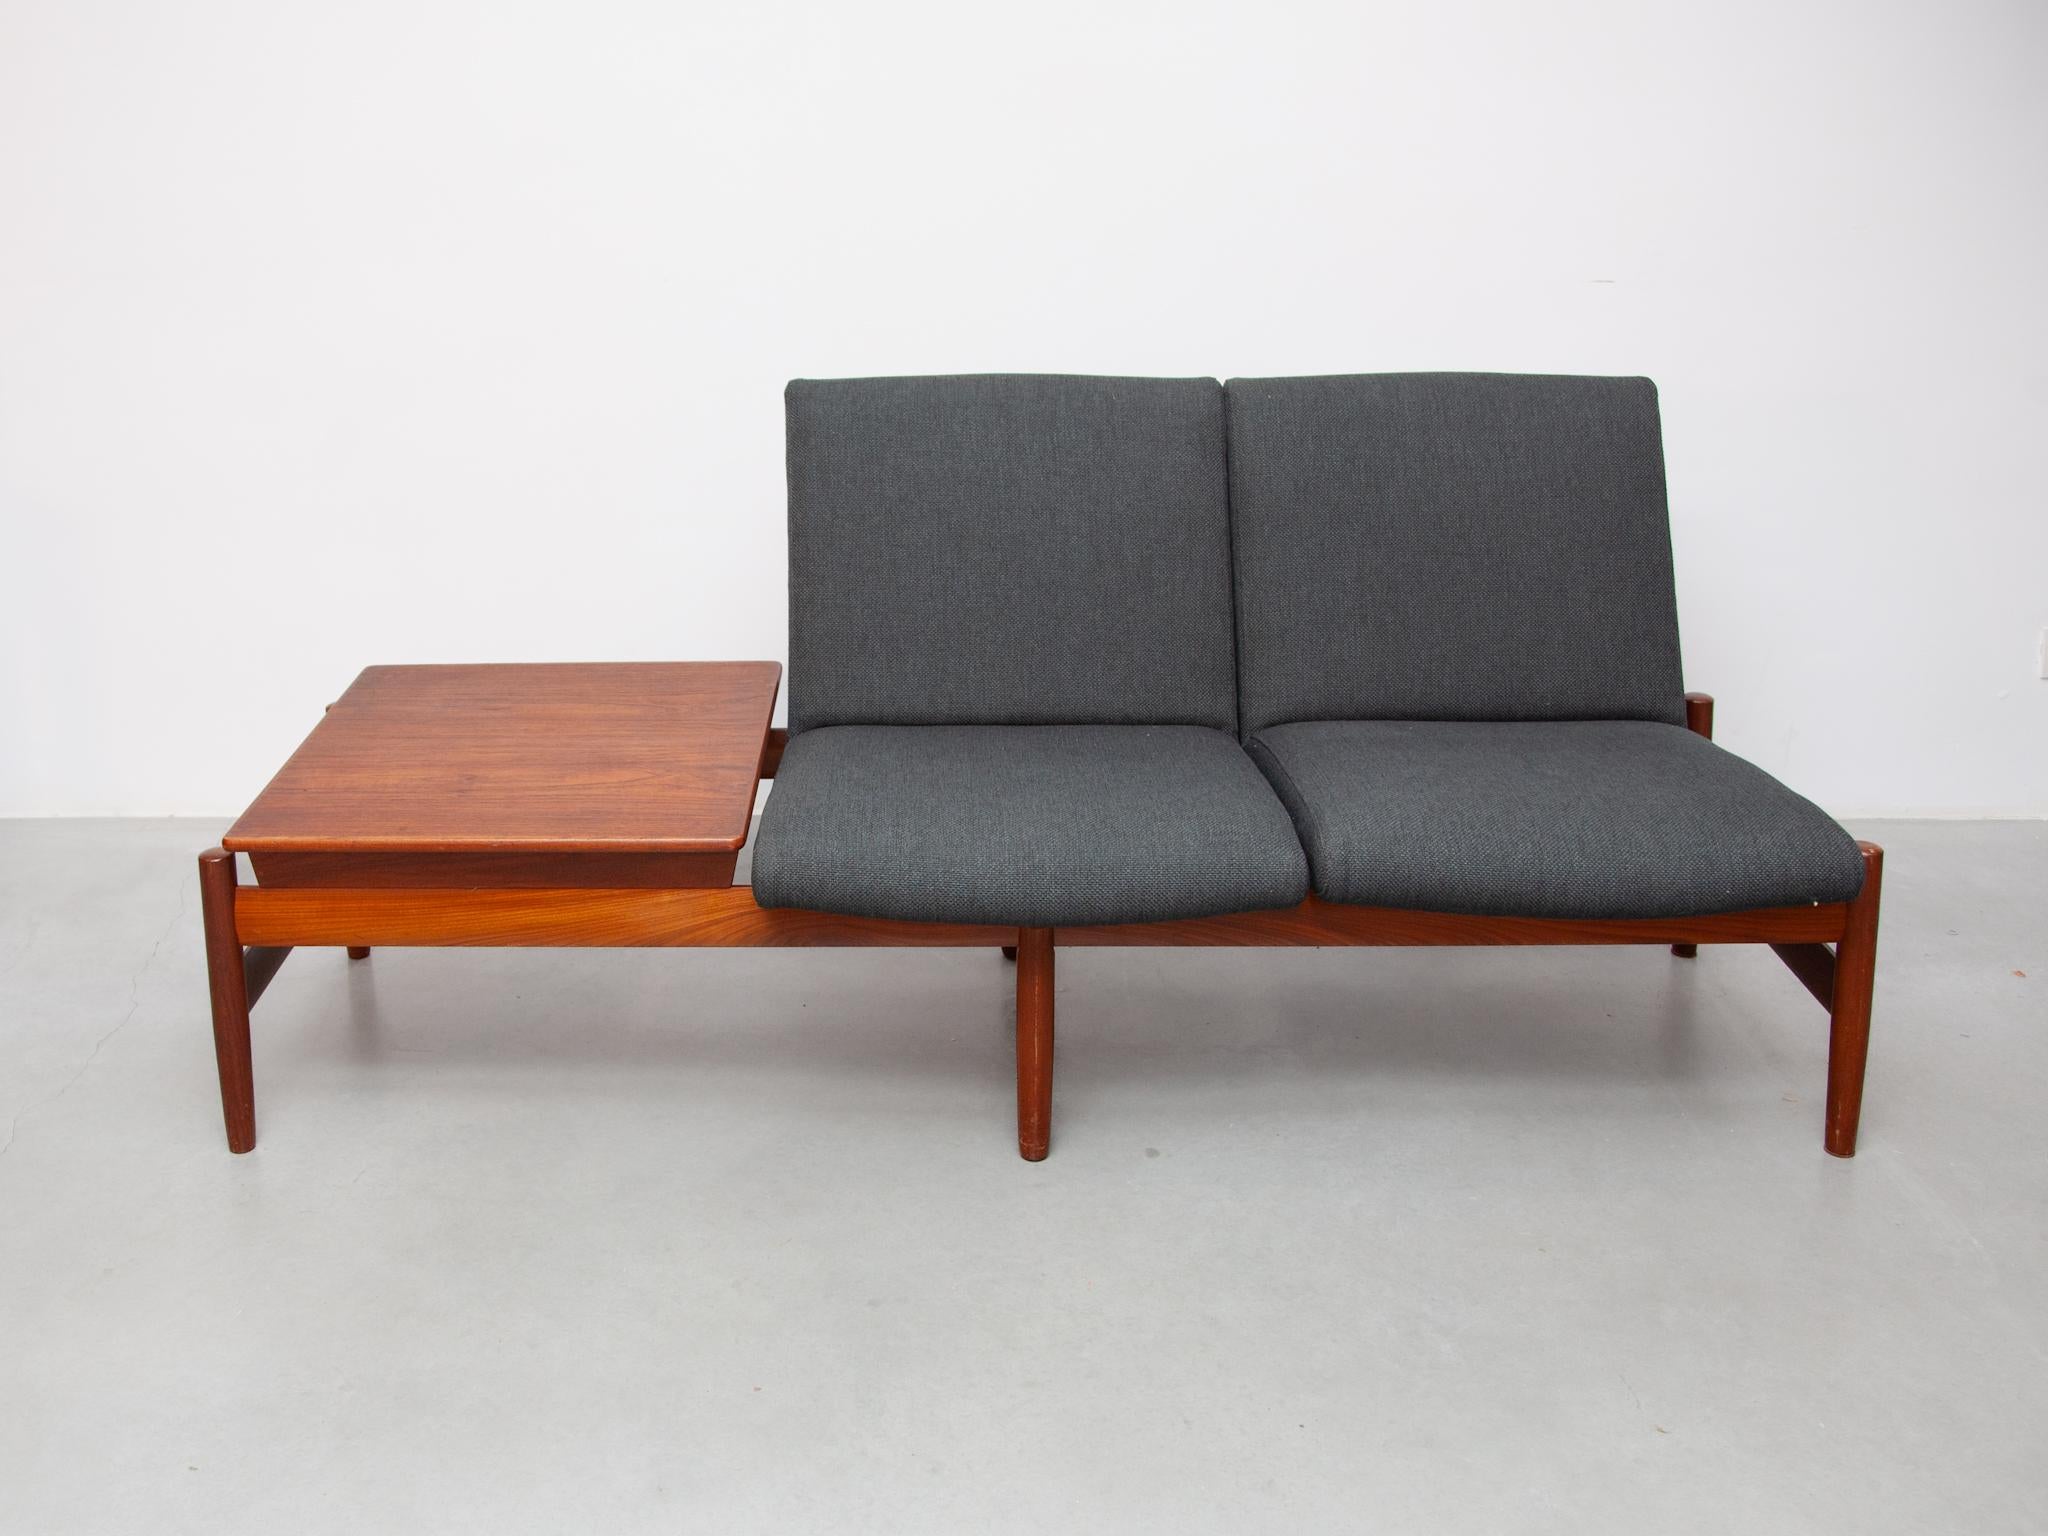 Modulares Sofa aus Teakholz aus den 1960er Jahren von Gunnar Sørlie für Karl Sørlie & Sønner, Sarpsborg. Modell Saga mit hochwertigem Rahmen aus massivem Teakholz. Das Sofa ist neu gepolstert worden. Die Anordnung der Sitze und der Tischplatte kann